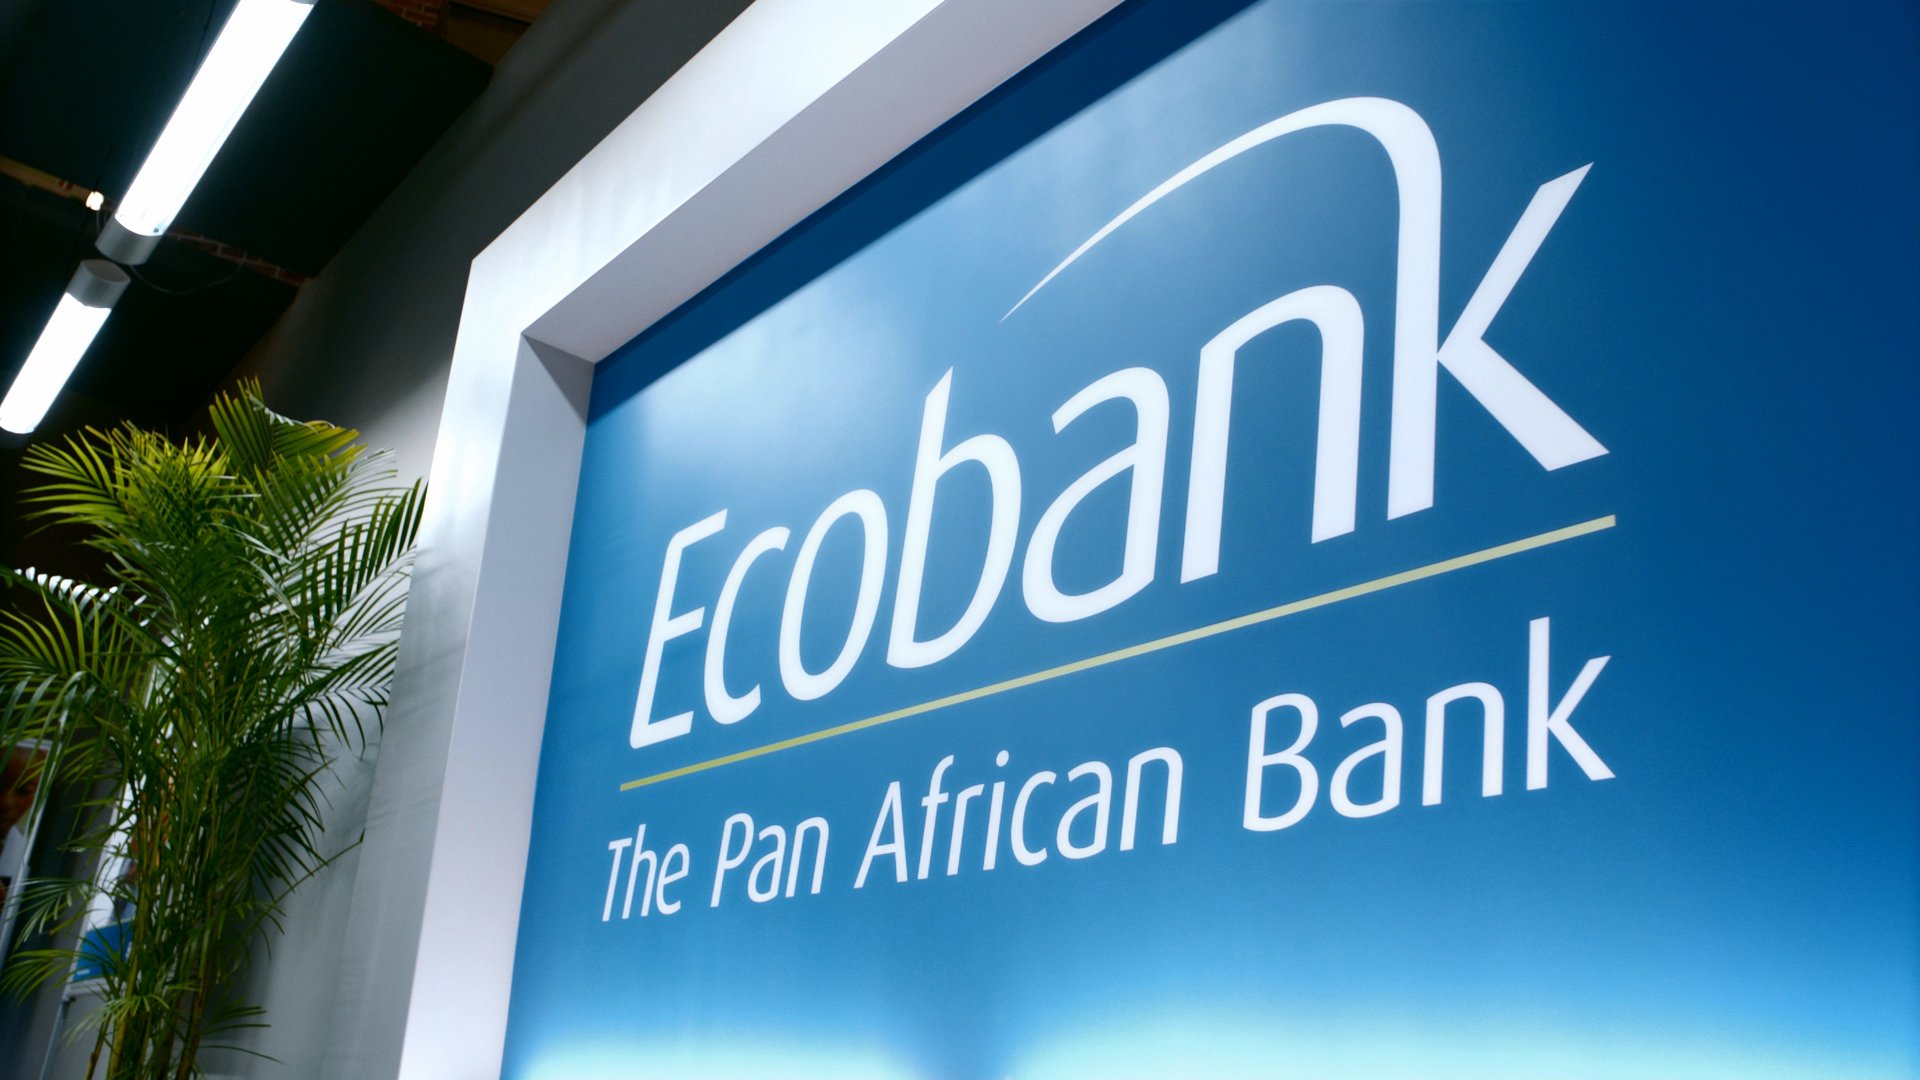 Ecobank tender on CCTV, AVR and network equipment